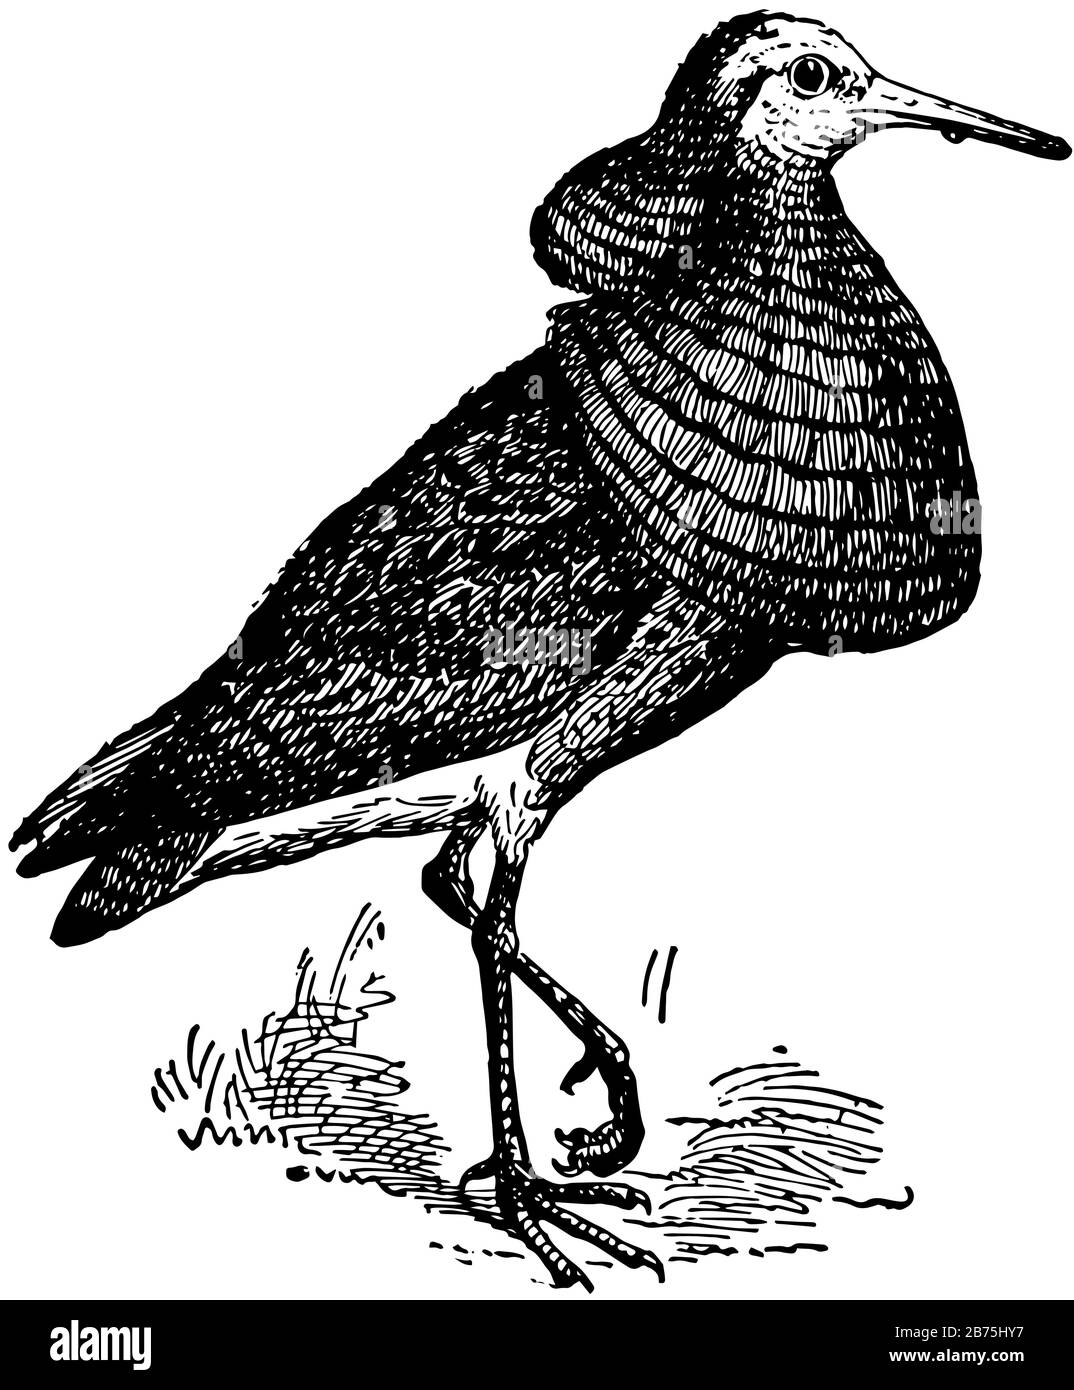 Fighting Sandpiper ist ein beliebter Name für mehrere Watvögel, Vintage-Linien-Zeichnung oder Gravier-Illustration. Stock Vektor